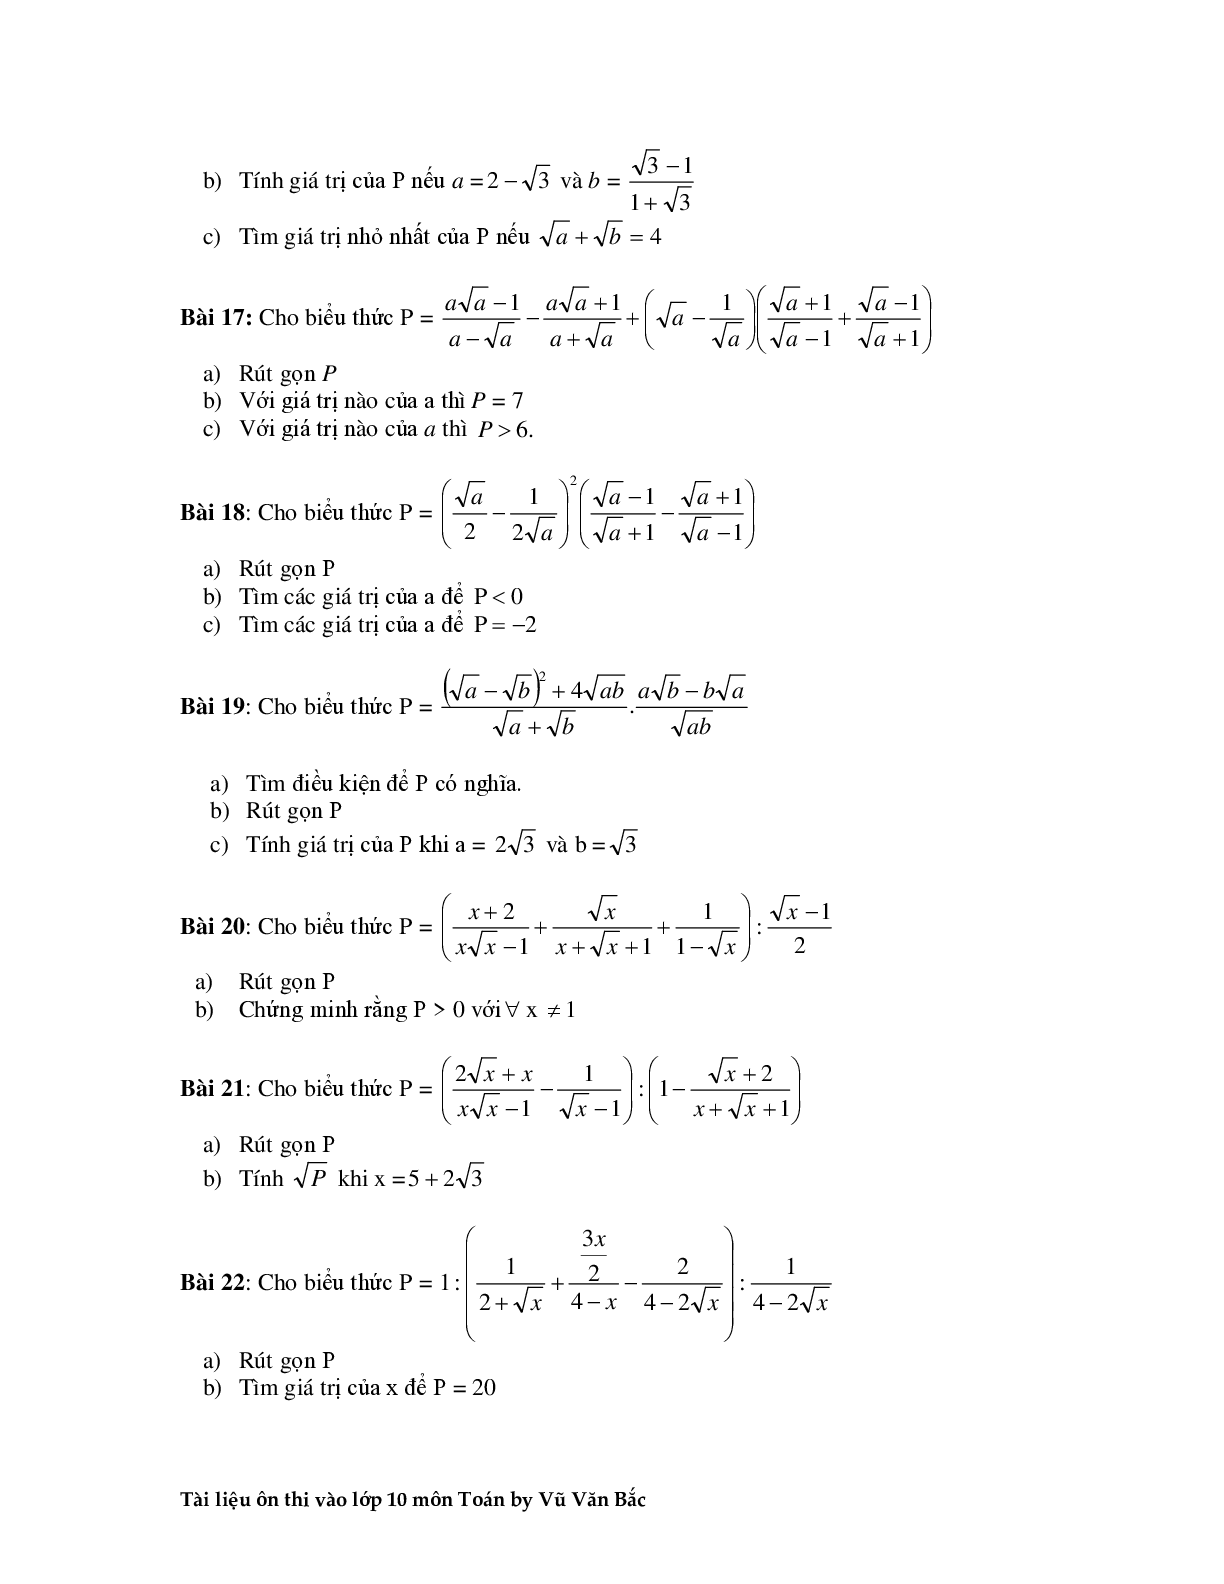 Tài liệu ôn thi vào lớp 10 môn toán (trang 6)